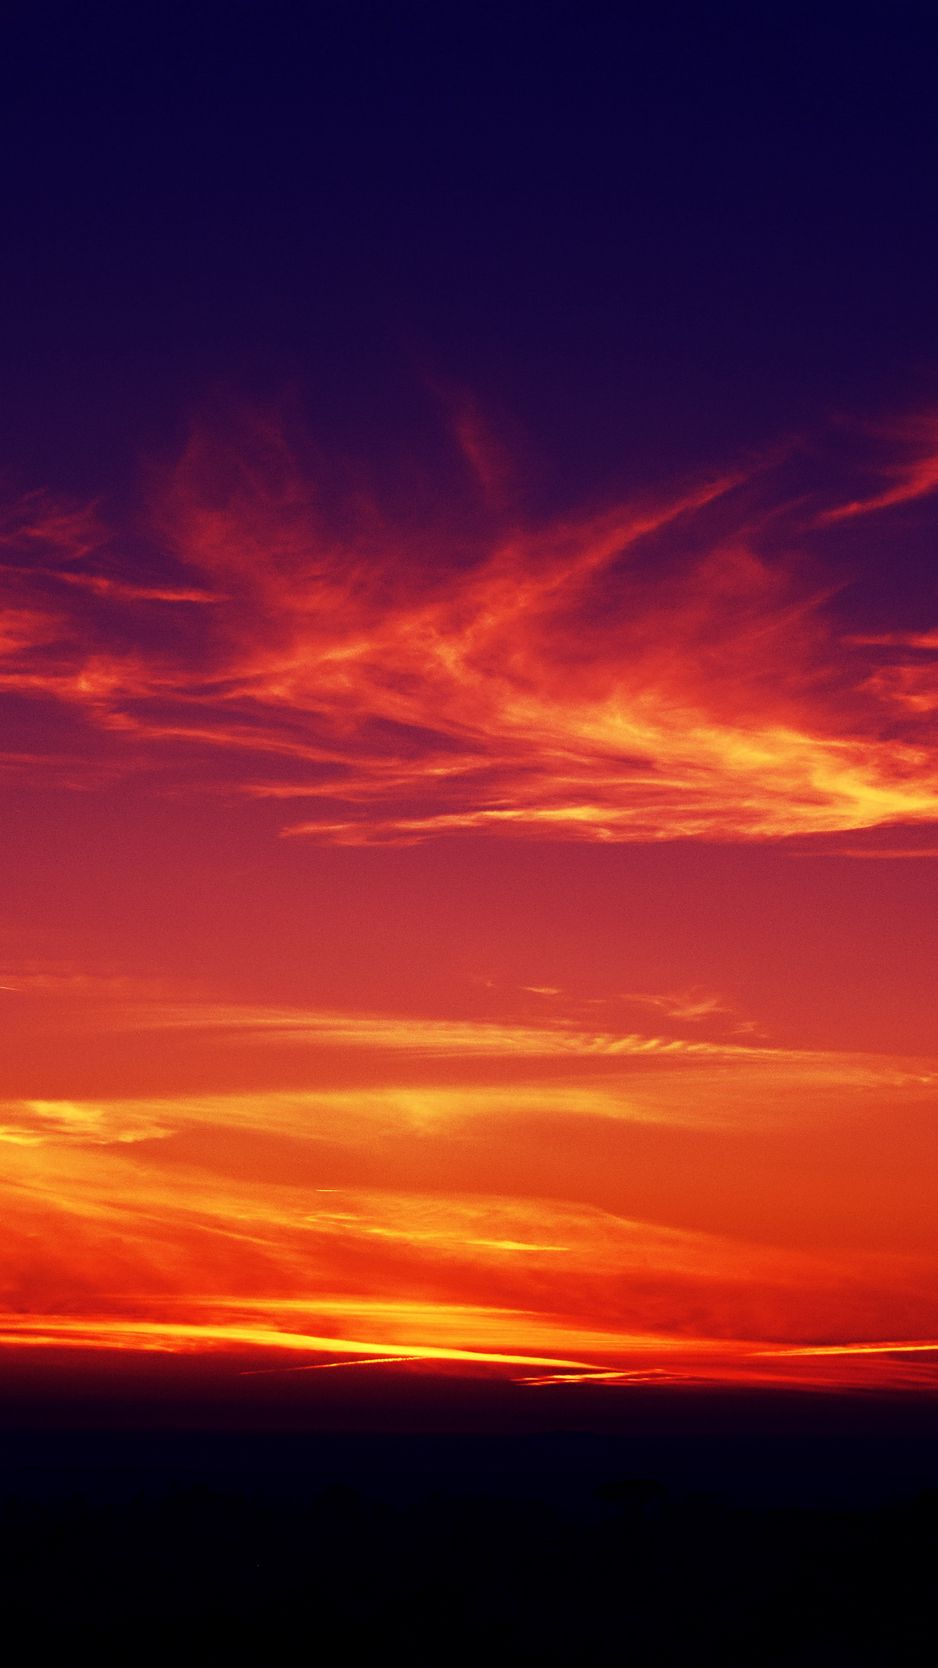 Ánh nắng vàng buổi hoàng hôn nhuộm sắc trời đỏ rực, đó là cảm hứng để tạo nên những bức ảnh đẹp nhất về Sunset Sky. Hãy thưởng thức vẻ đẹp của mặt trời lặn đầy ấn tượng và tìm kiếm cảm xúc lãng mạn trong bức ảnh này.